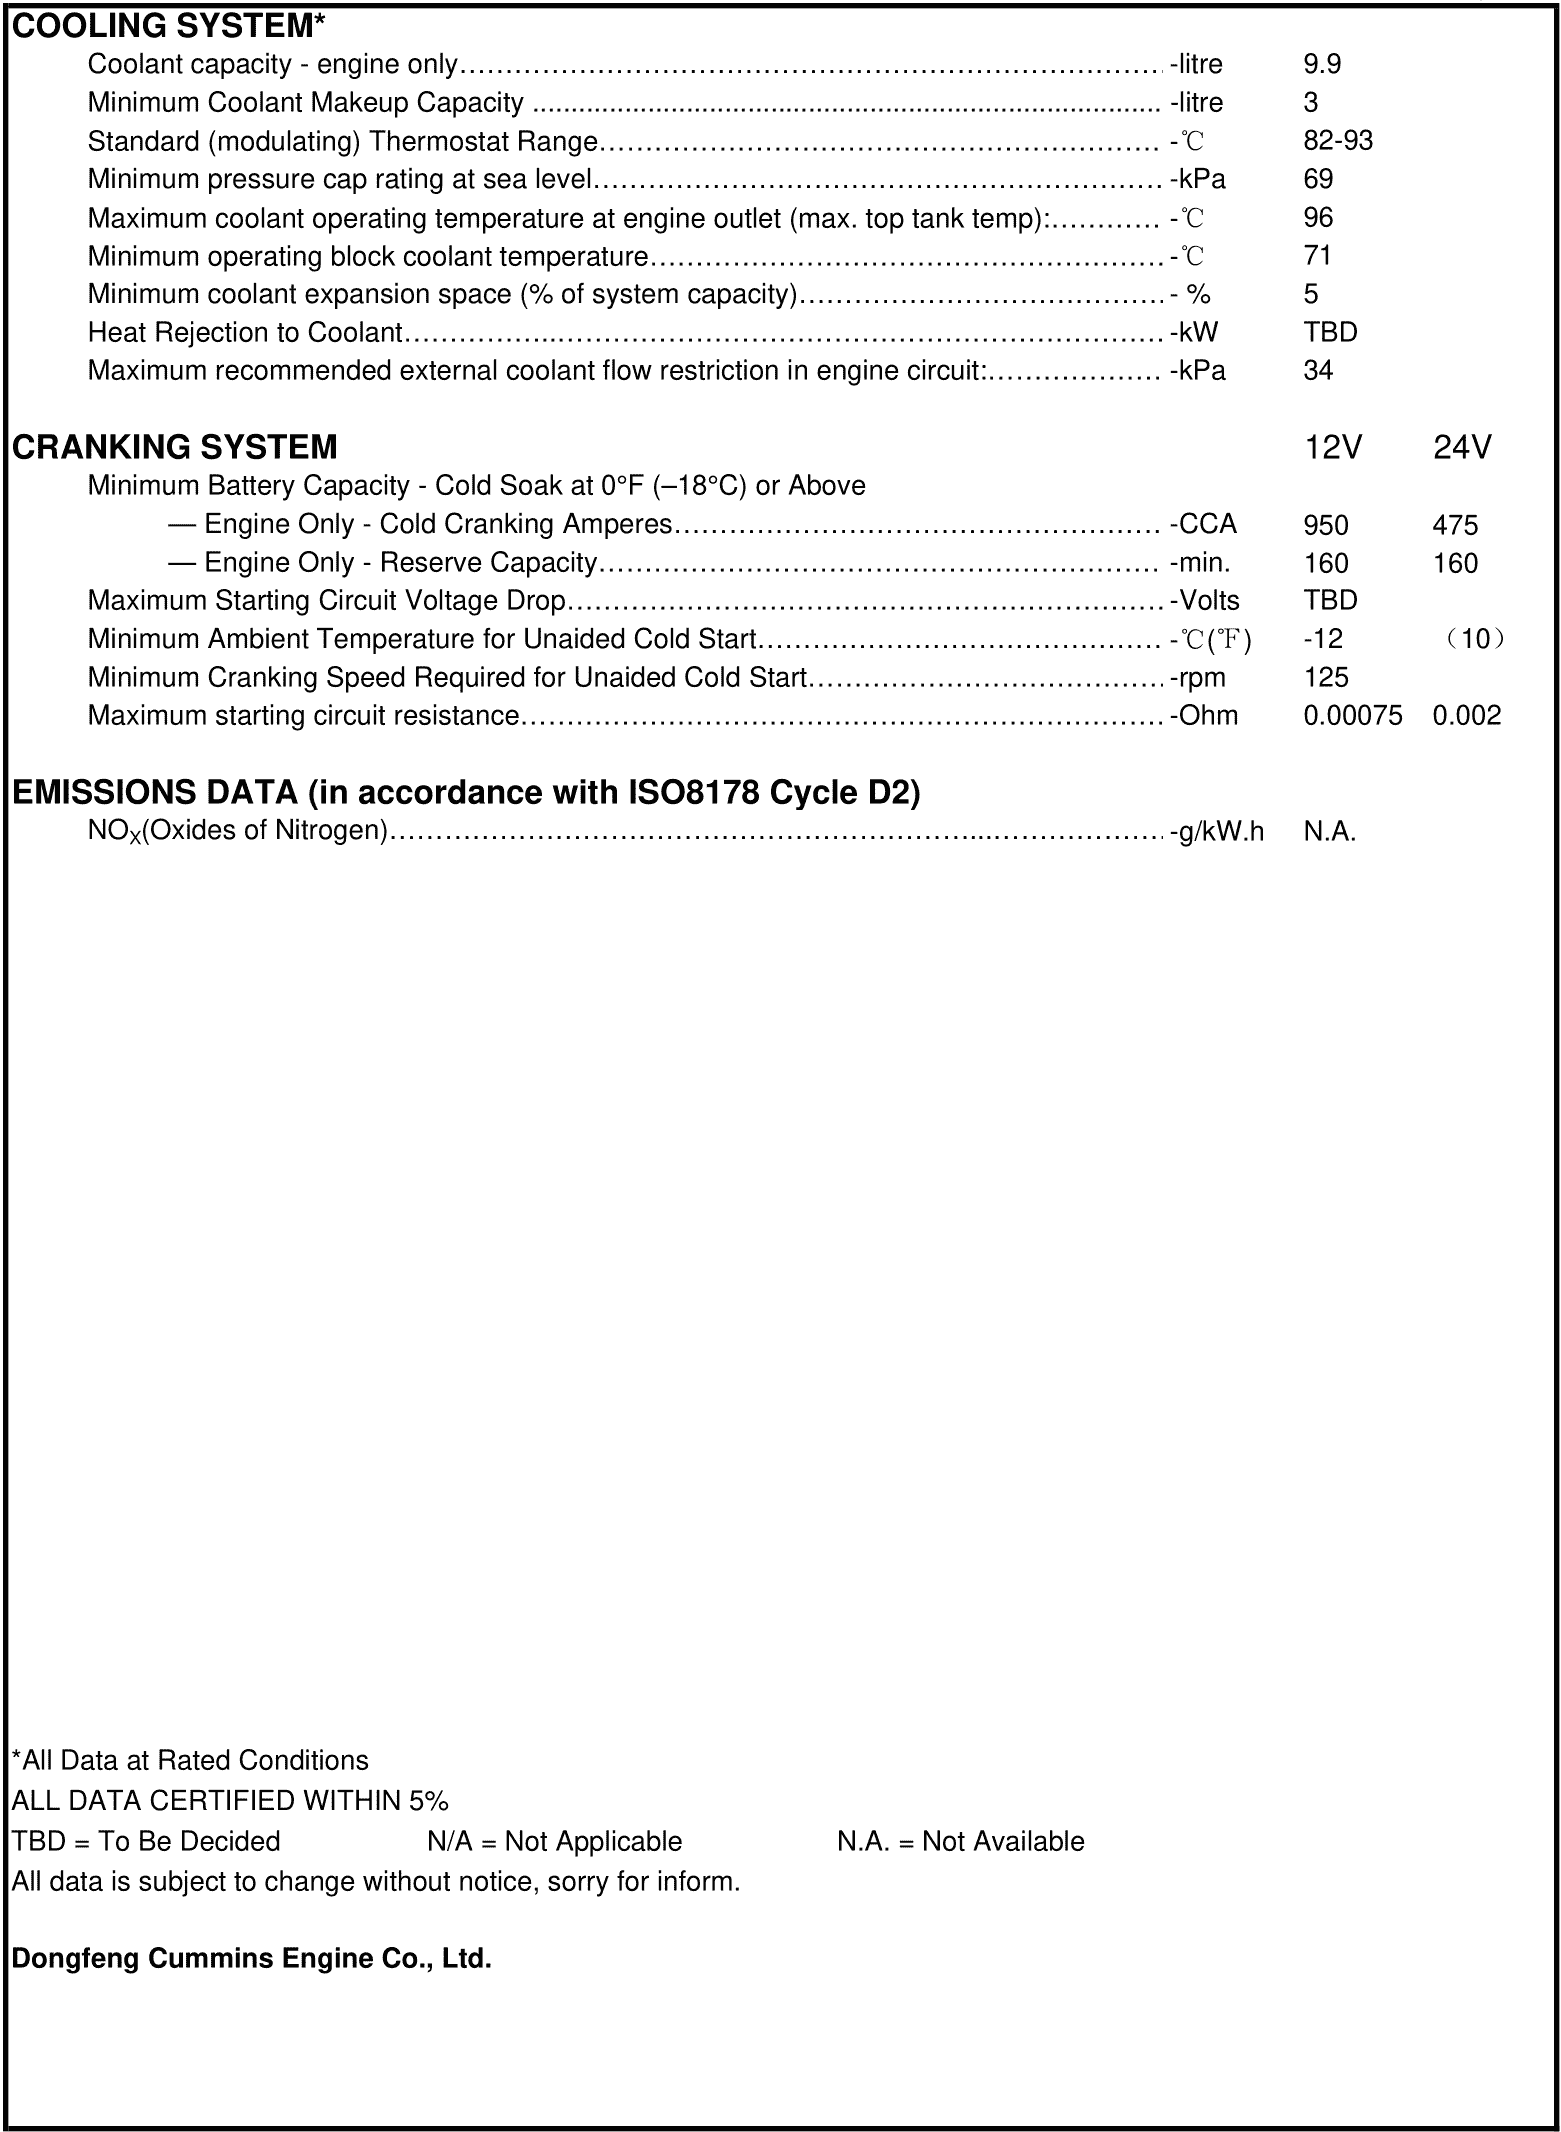 Cummins 6BTAA5.9-GM115 datasheet